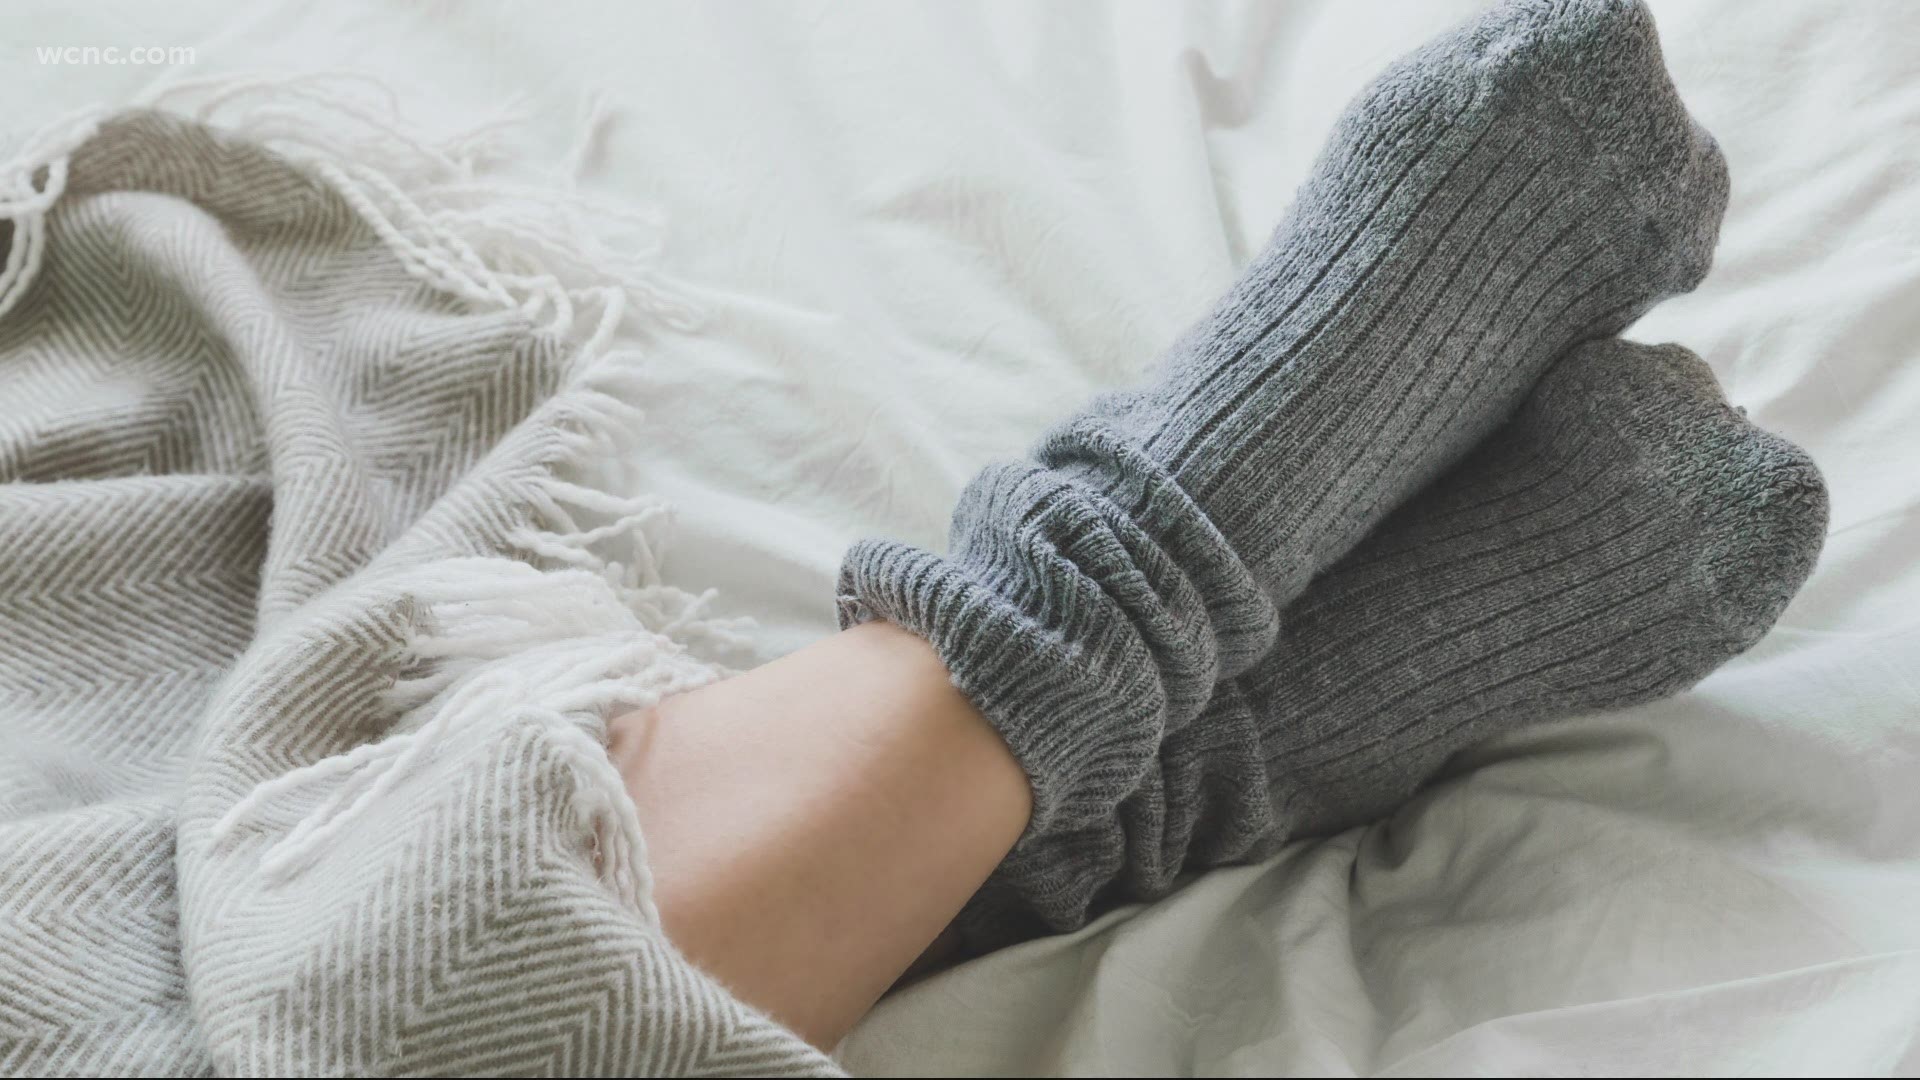 Sleeping With Socks On: Can Warm Feet Help You Fall Asleep?